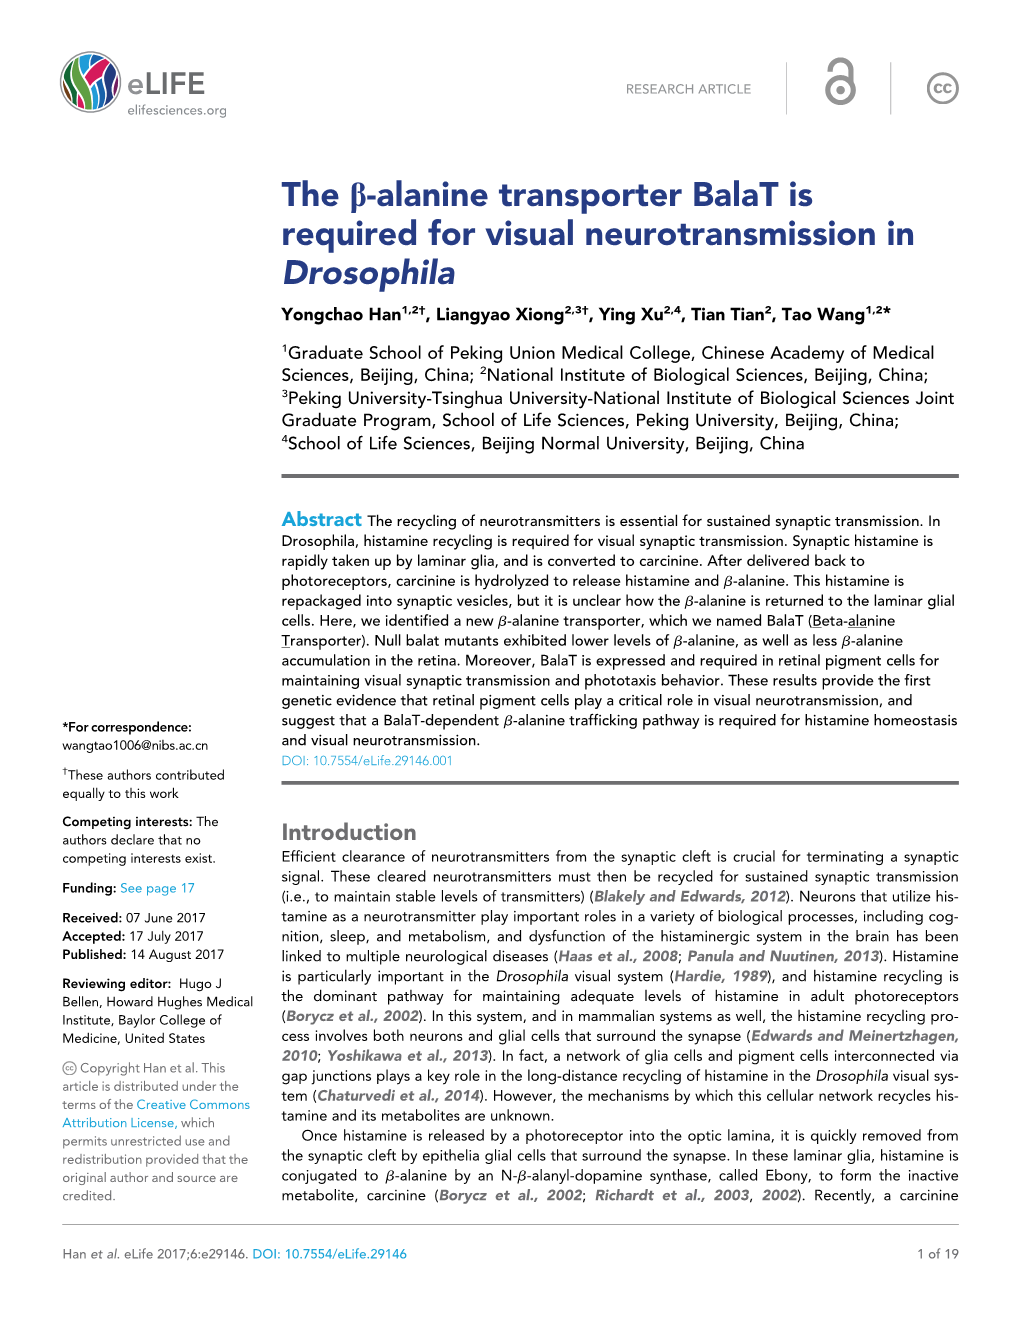 The B-Alanine Transporter Balat Is Required for Visual Neurotransmission in Drosophila Yongchao Han1,2†, Liangyao Xiong2,3†, Ying Xu2,4, Tian Tian2, Tao Wang1,2*